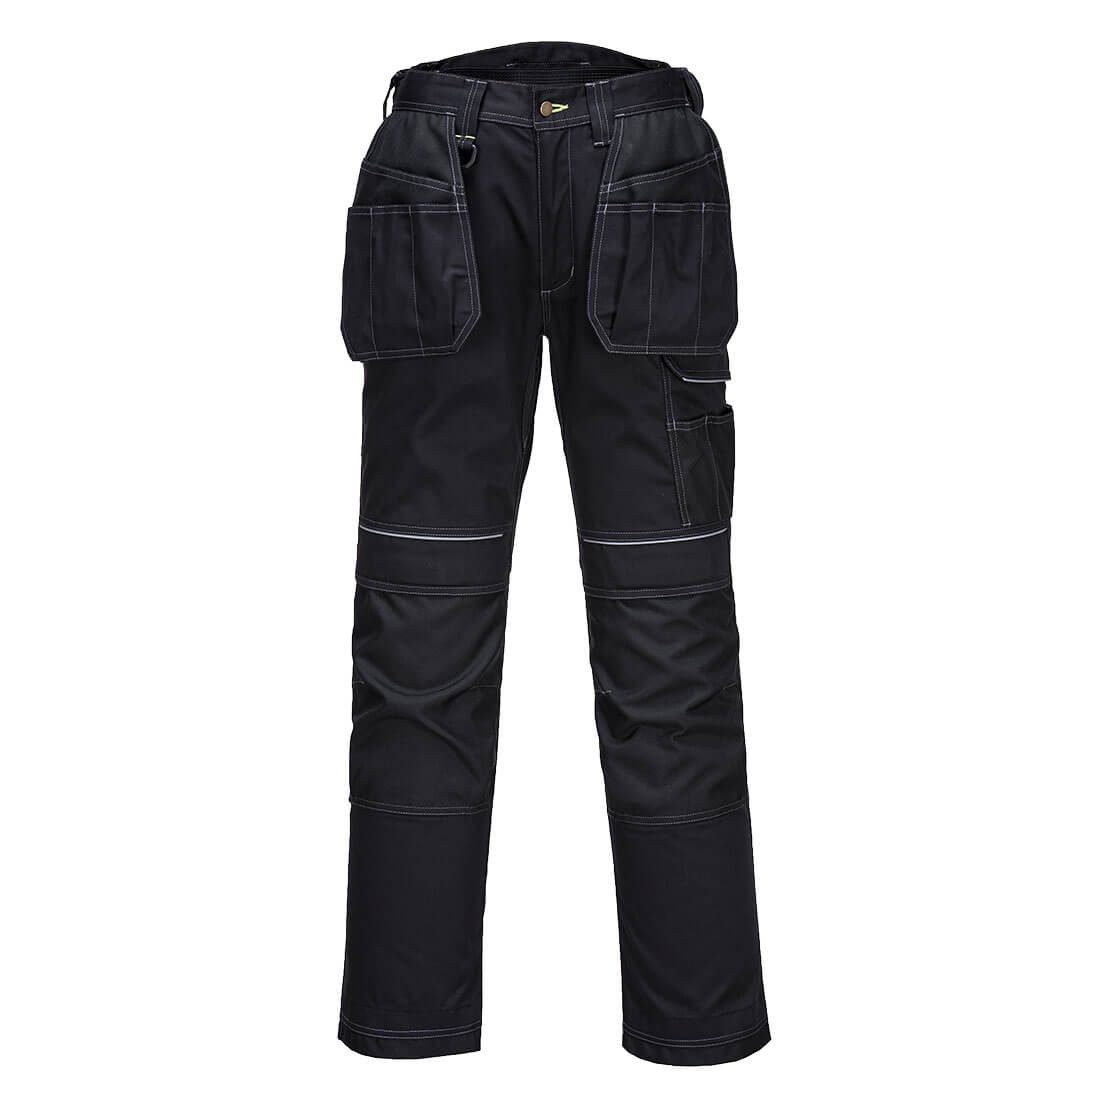 Pantalon de travail PW3 Stretch Holster - Les vêtements de protection